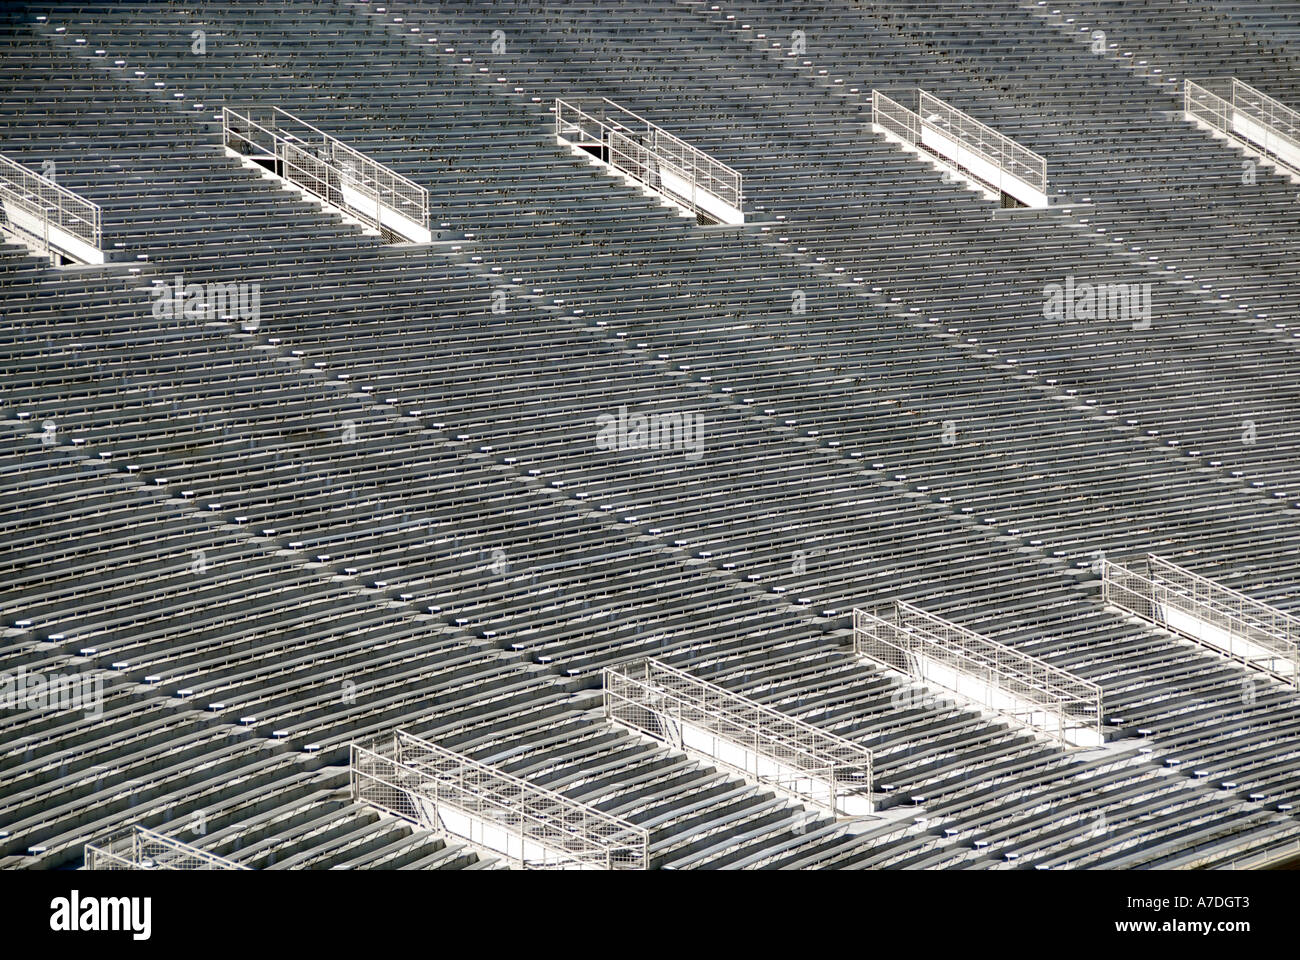 Doak S Campbell Fußball-Stadion und Besucherzentrum an der Florida State University Campus Tallahassee Florida FL Seminolen Stockfoto